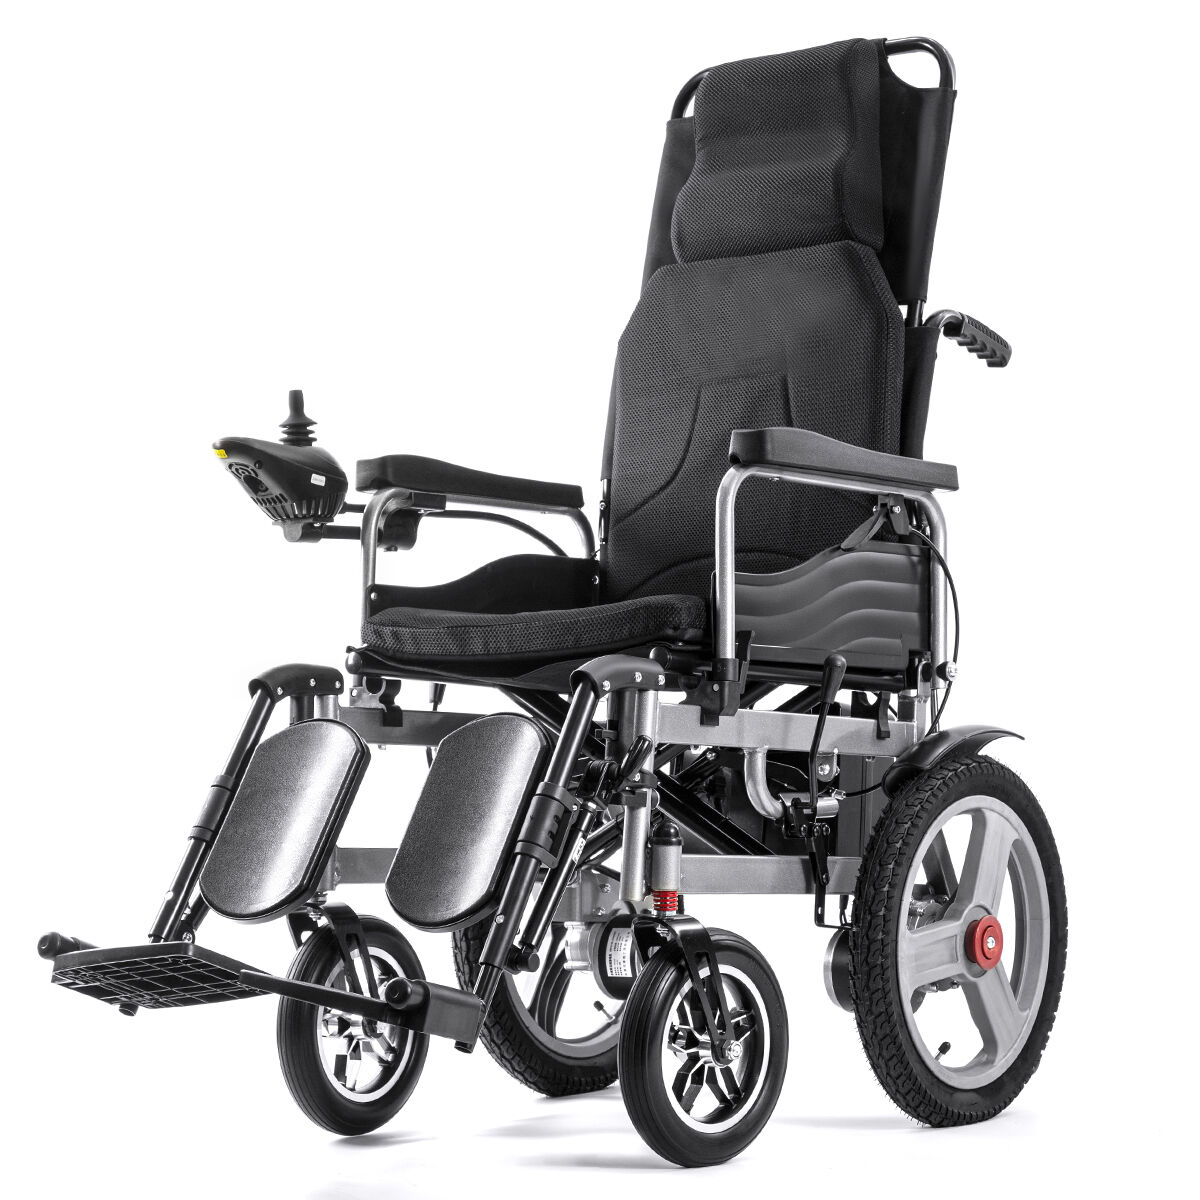 BC-ES6003A-LW nolaižams elektriskais ratiņkrēsls visā reljefā salokāms